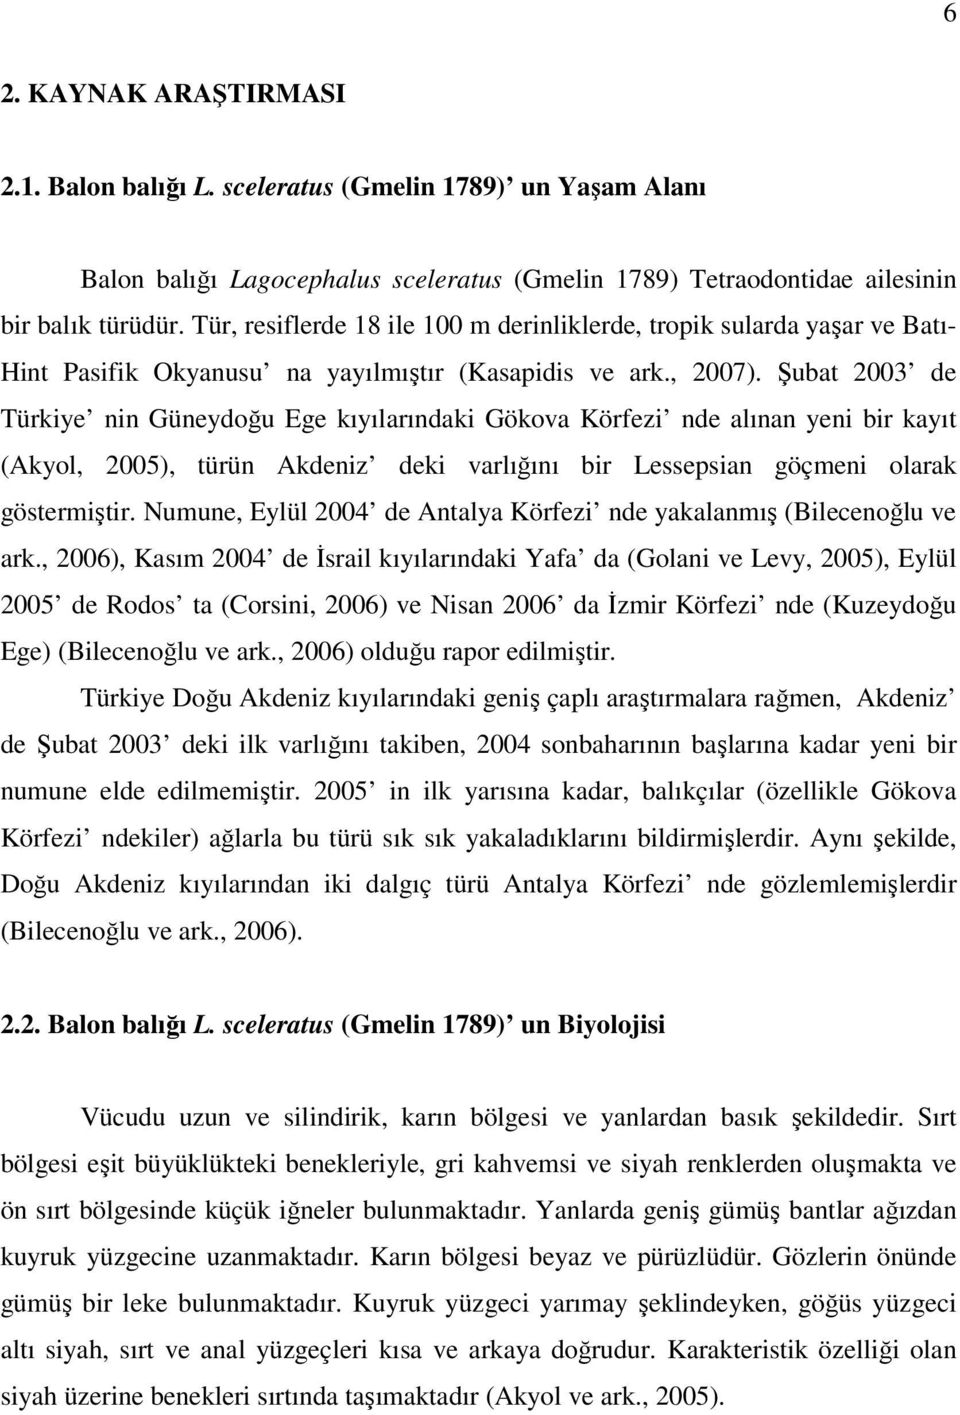 Şubat 2003 de Türkiye nin Güneydoğu Ege kıyılarındaki Gökova Körfezi nde alınan yeni bir kayıt (Akyol, 2005), türün Akdeniz deki varlığını bir Lessepsian göçmeni olarak göstermiştir.